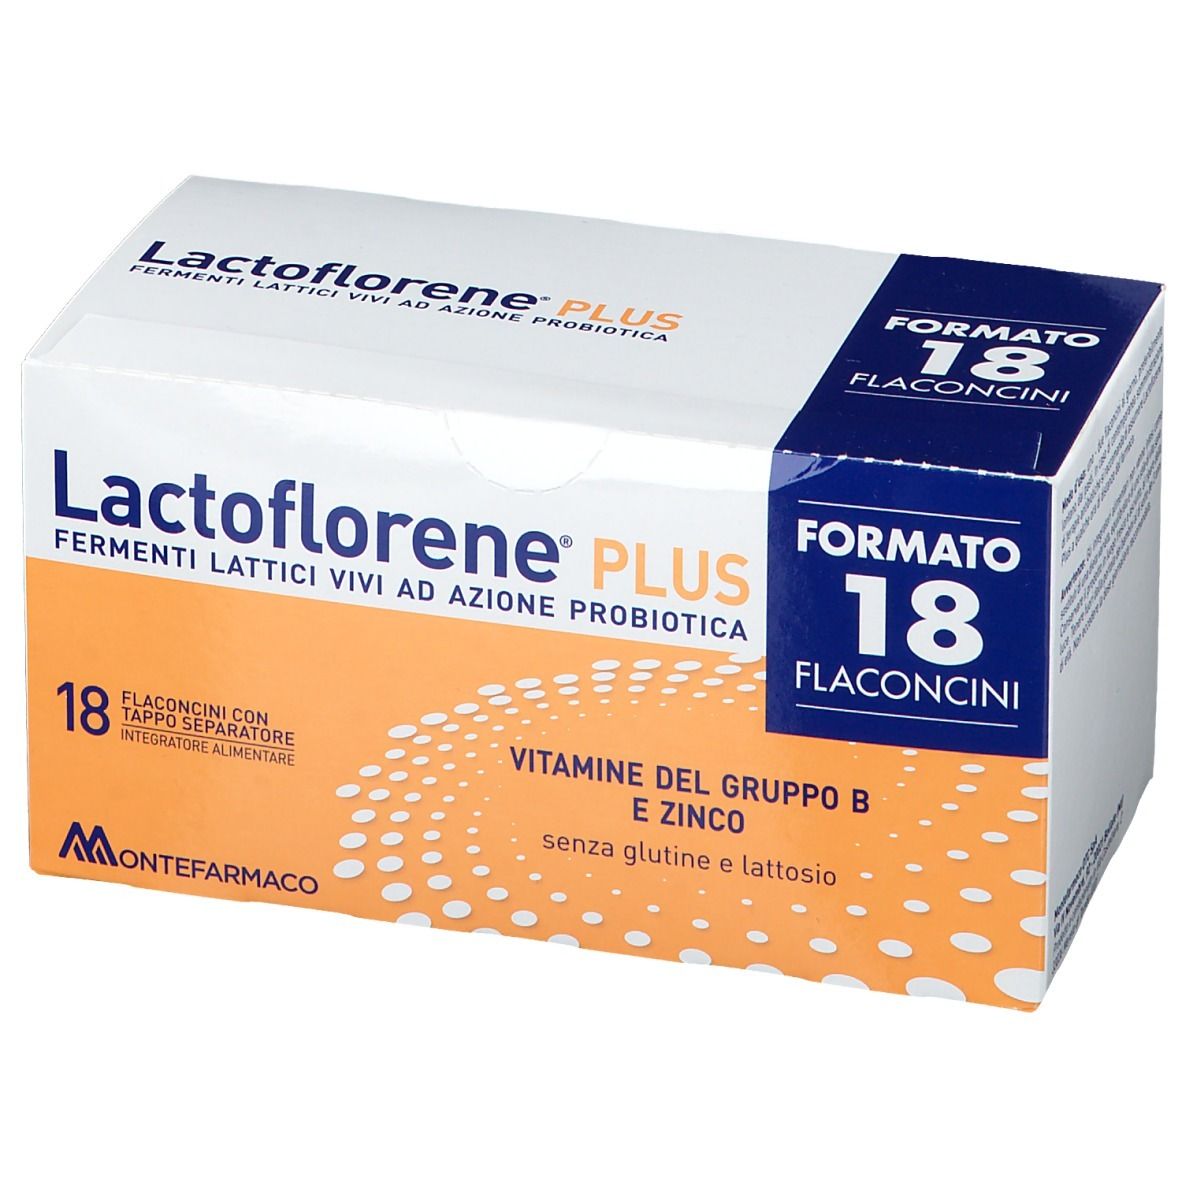 Lactoflorene® PLUS Flaconcini